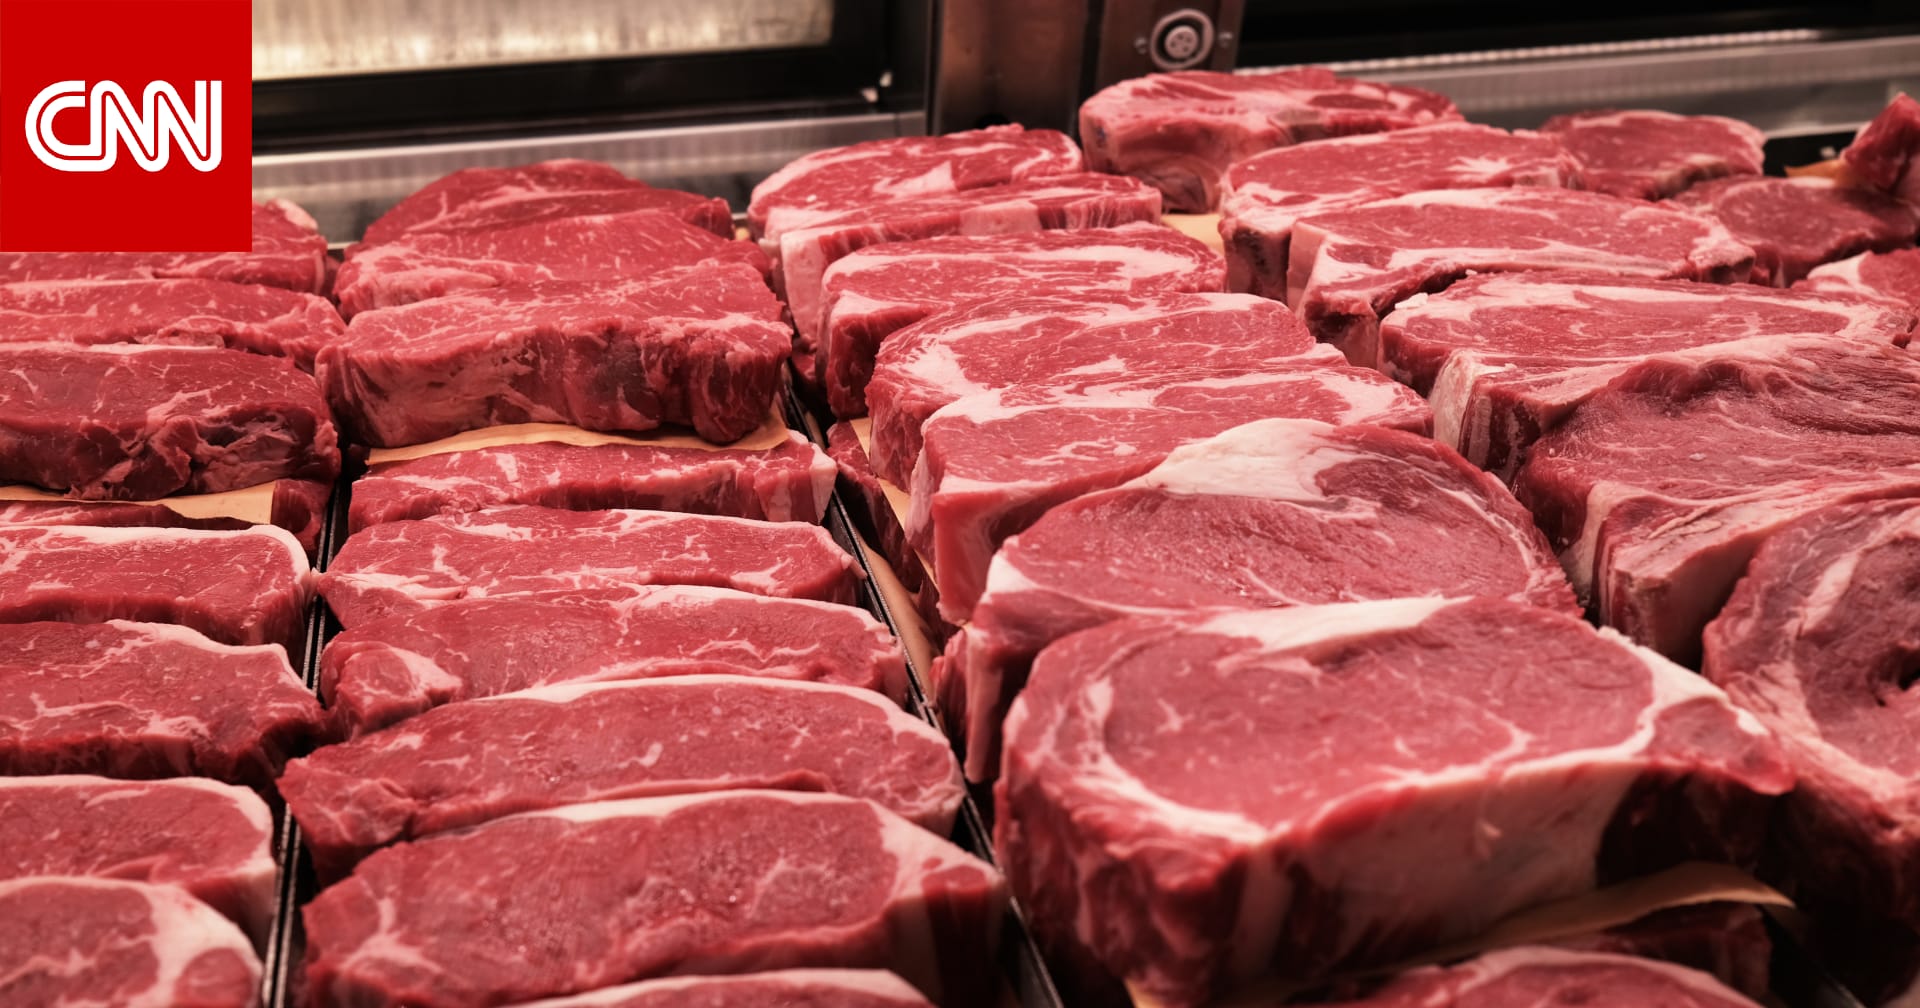 ما هي أفضل الطرق لتخزين اللحوم قبل الطهي وبعده للحفاظ على السلامة الغذائية؟ 